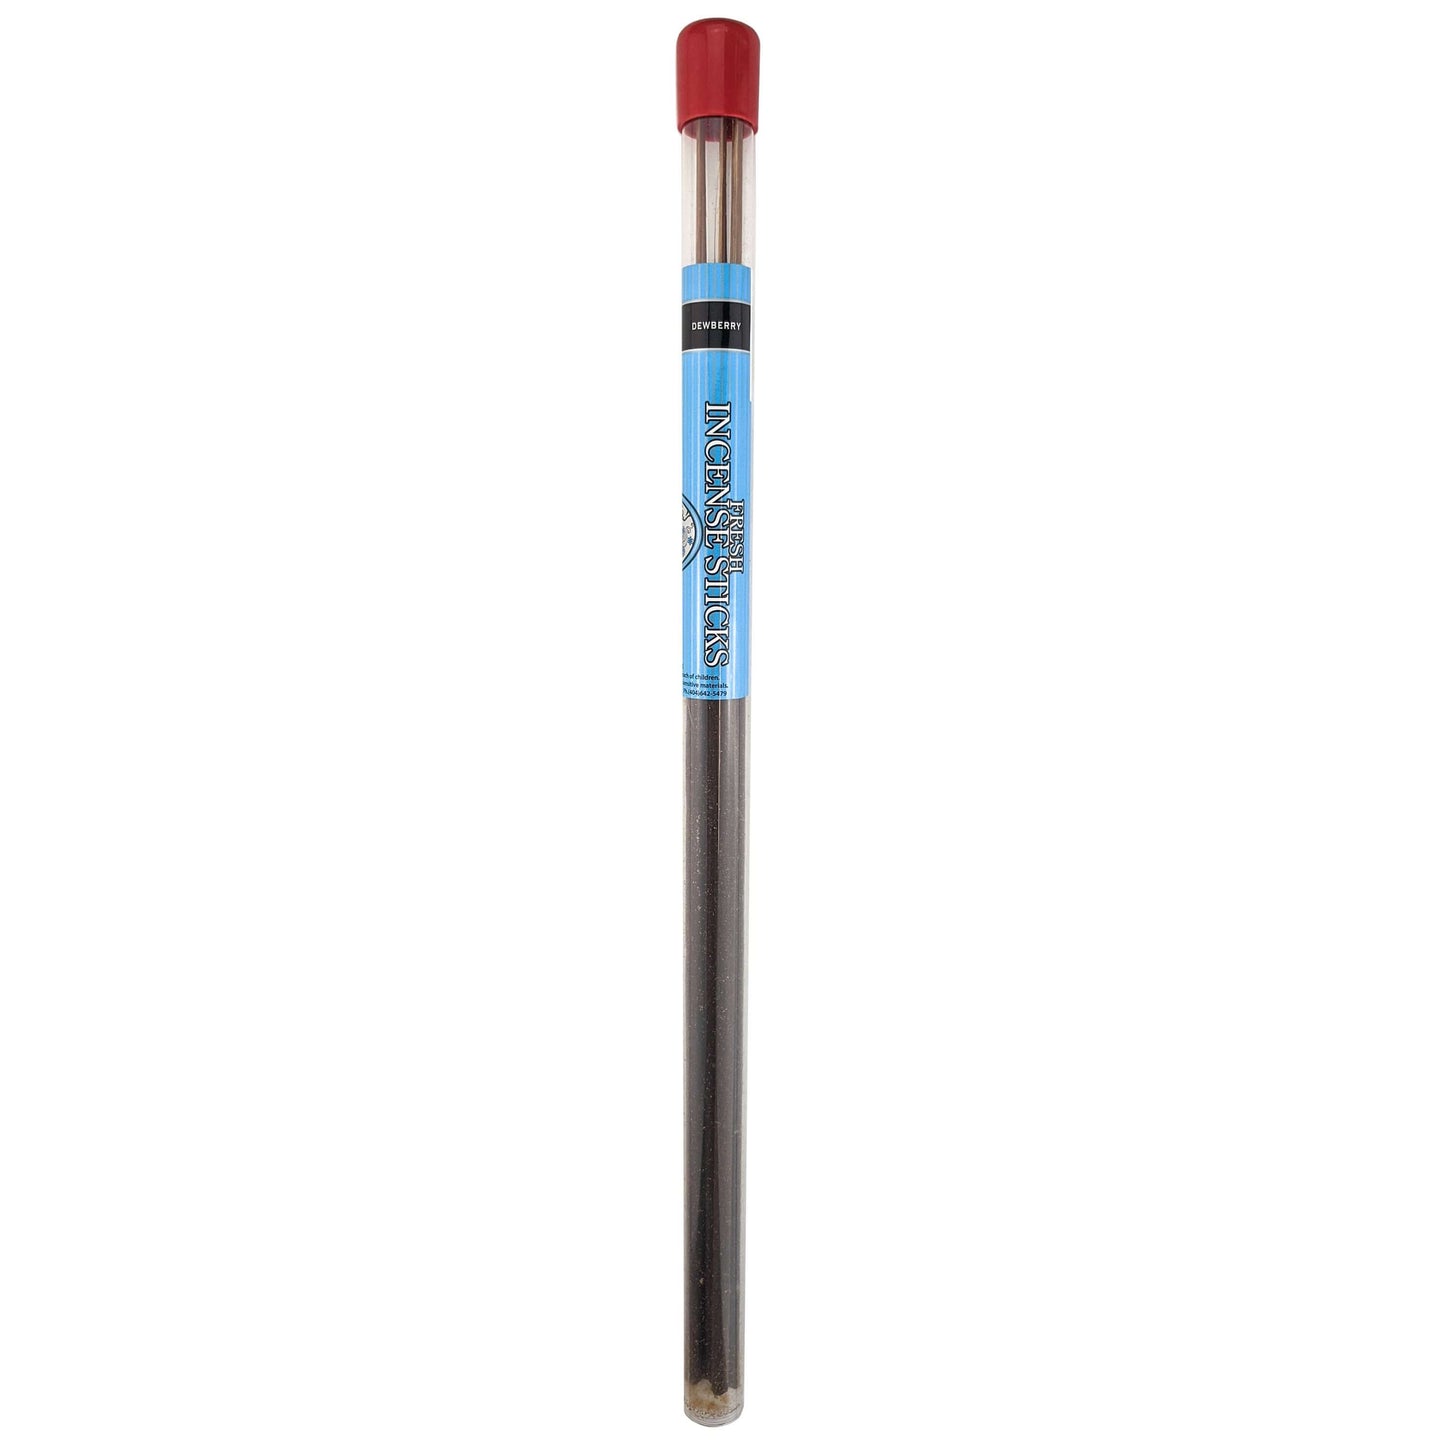 Dewberry Scent Blunt Power 17" Incense Sticks, 5-7 Sticks